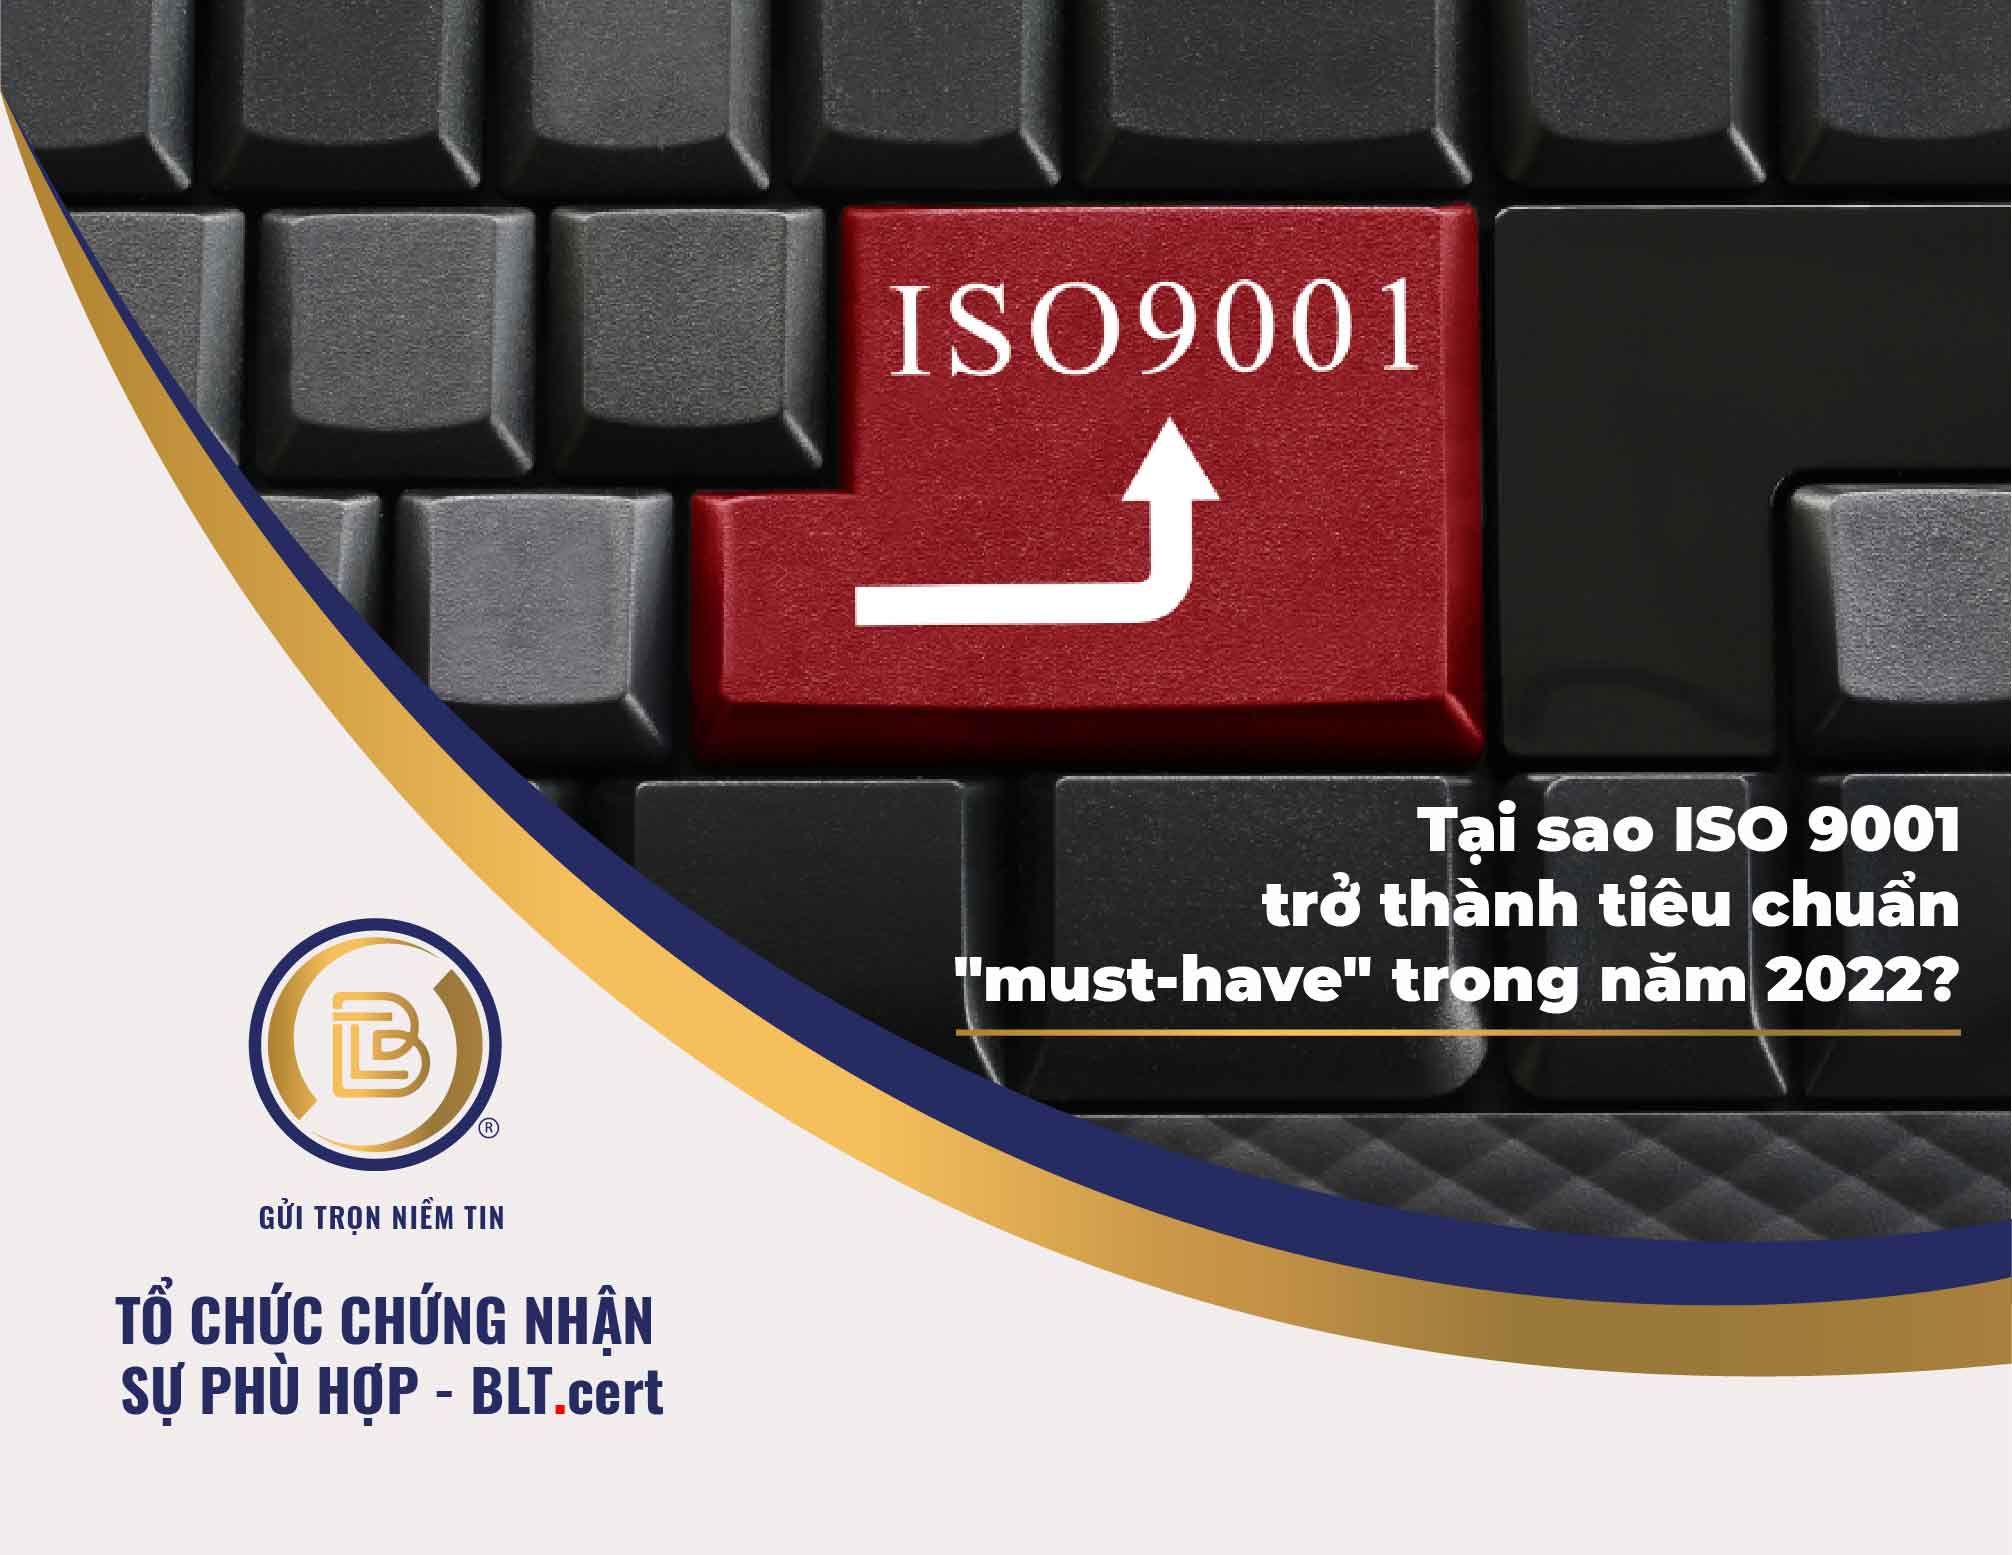 Tại sao ISO 9001 trở thành tiêu chuẩn 